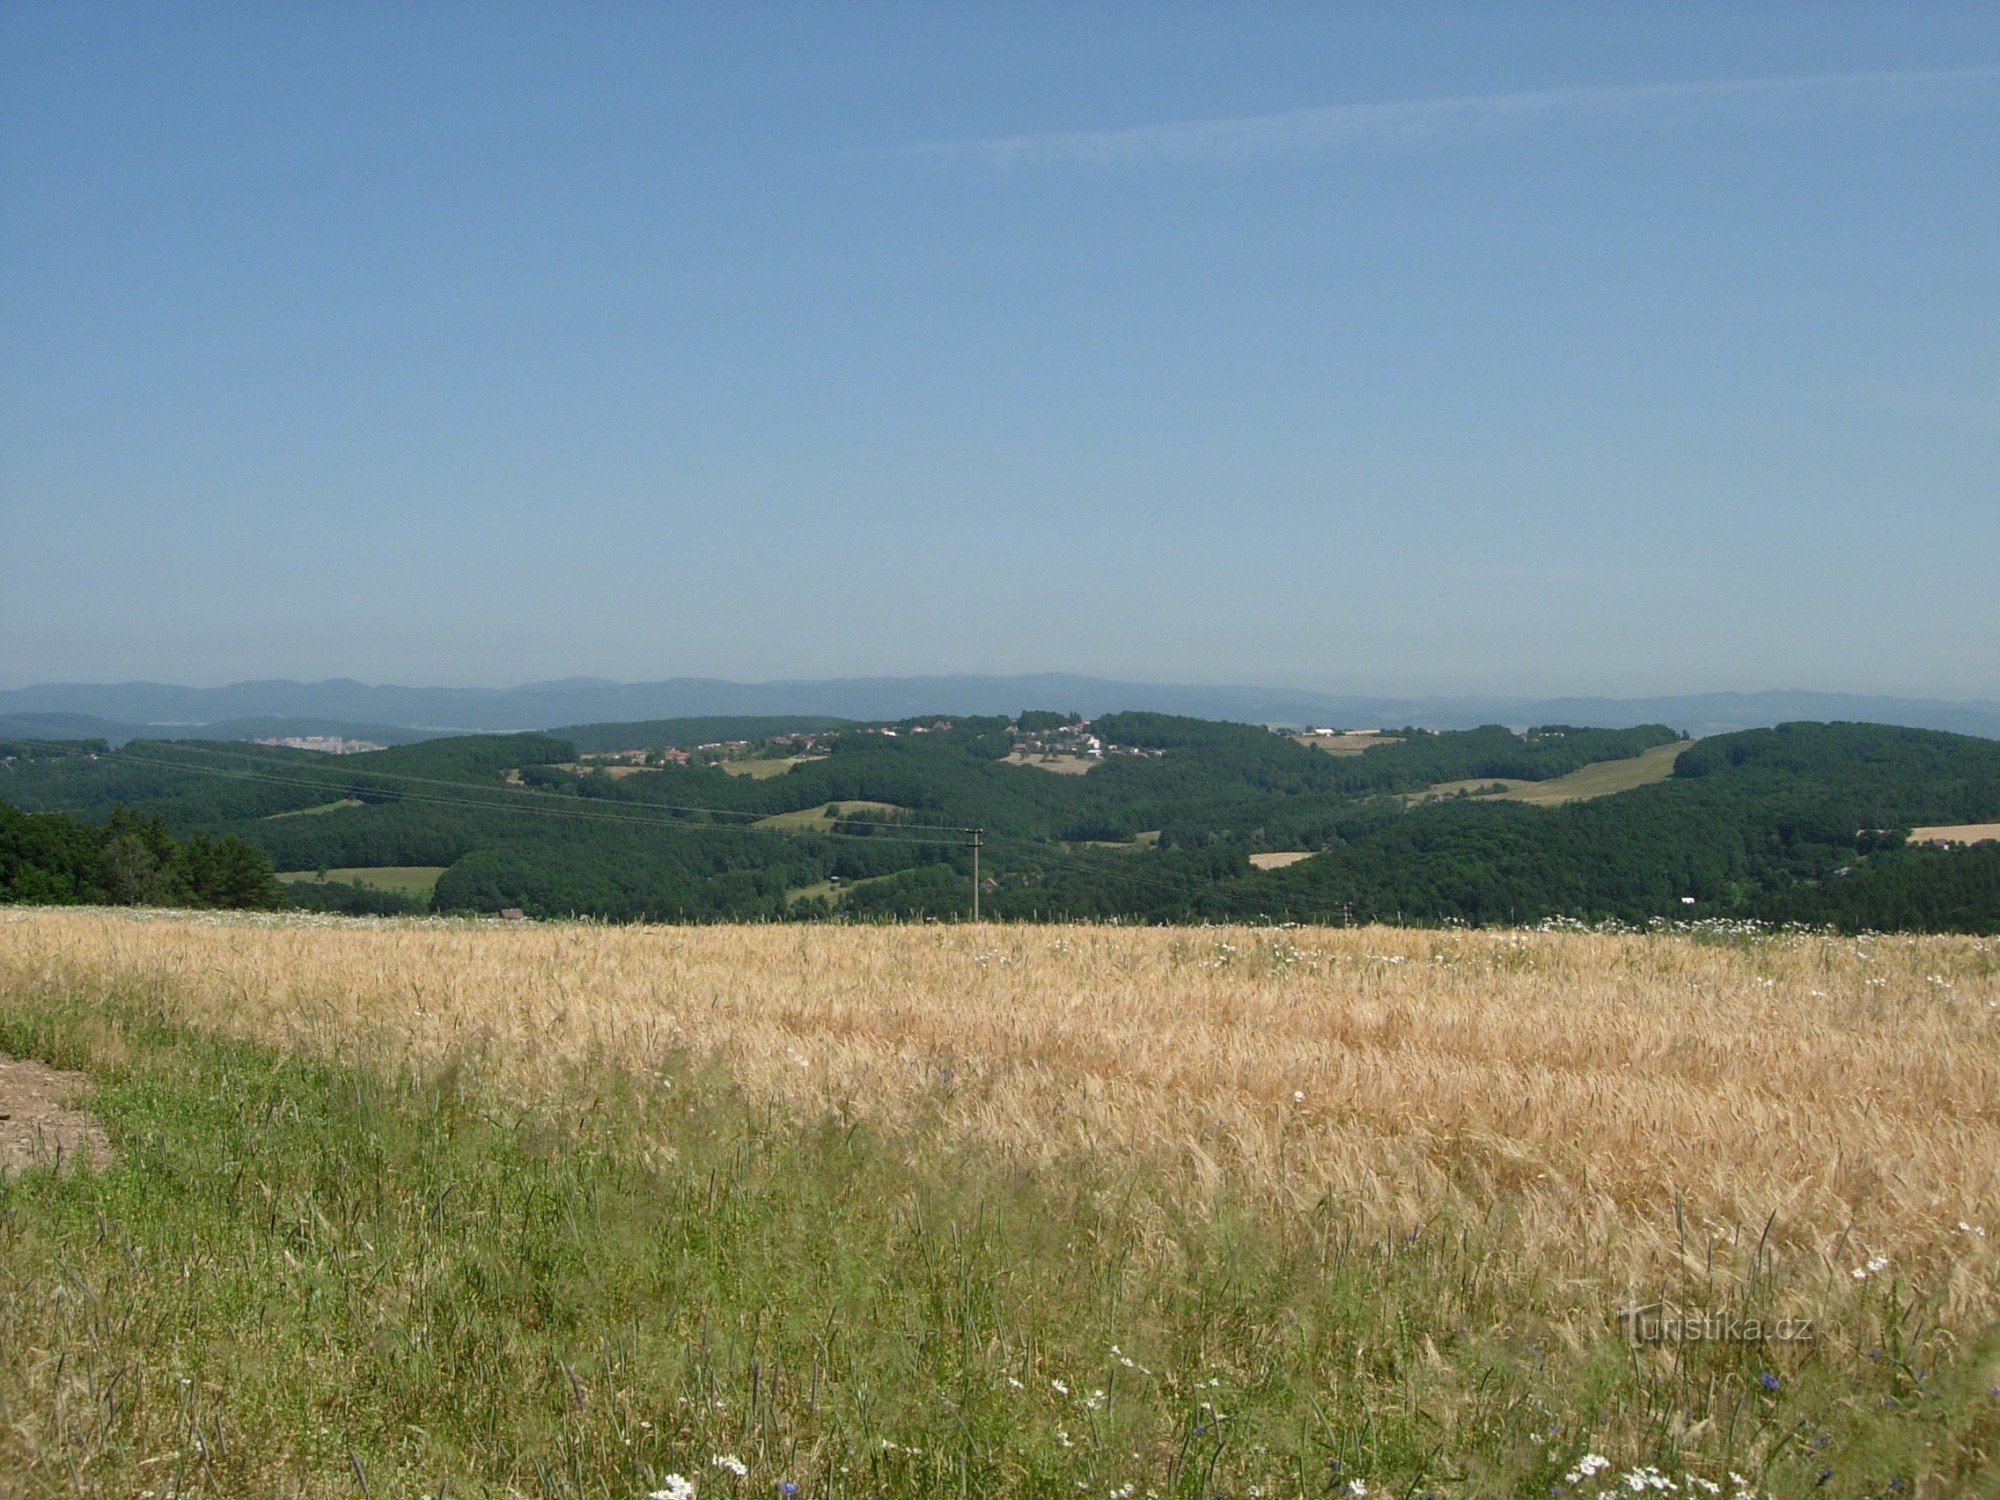 Злинское нагорье с Кудловым, Гостинские холмы сзади, жилой массив Злина слева